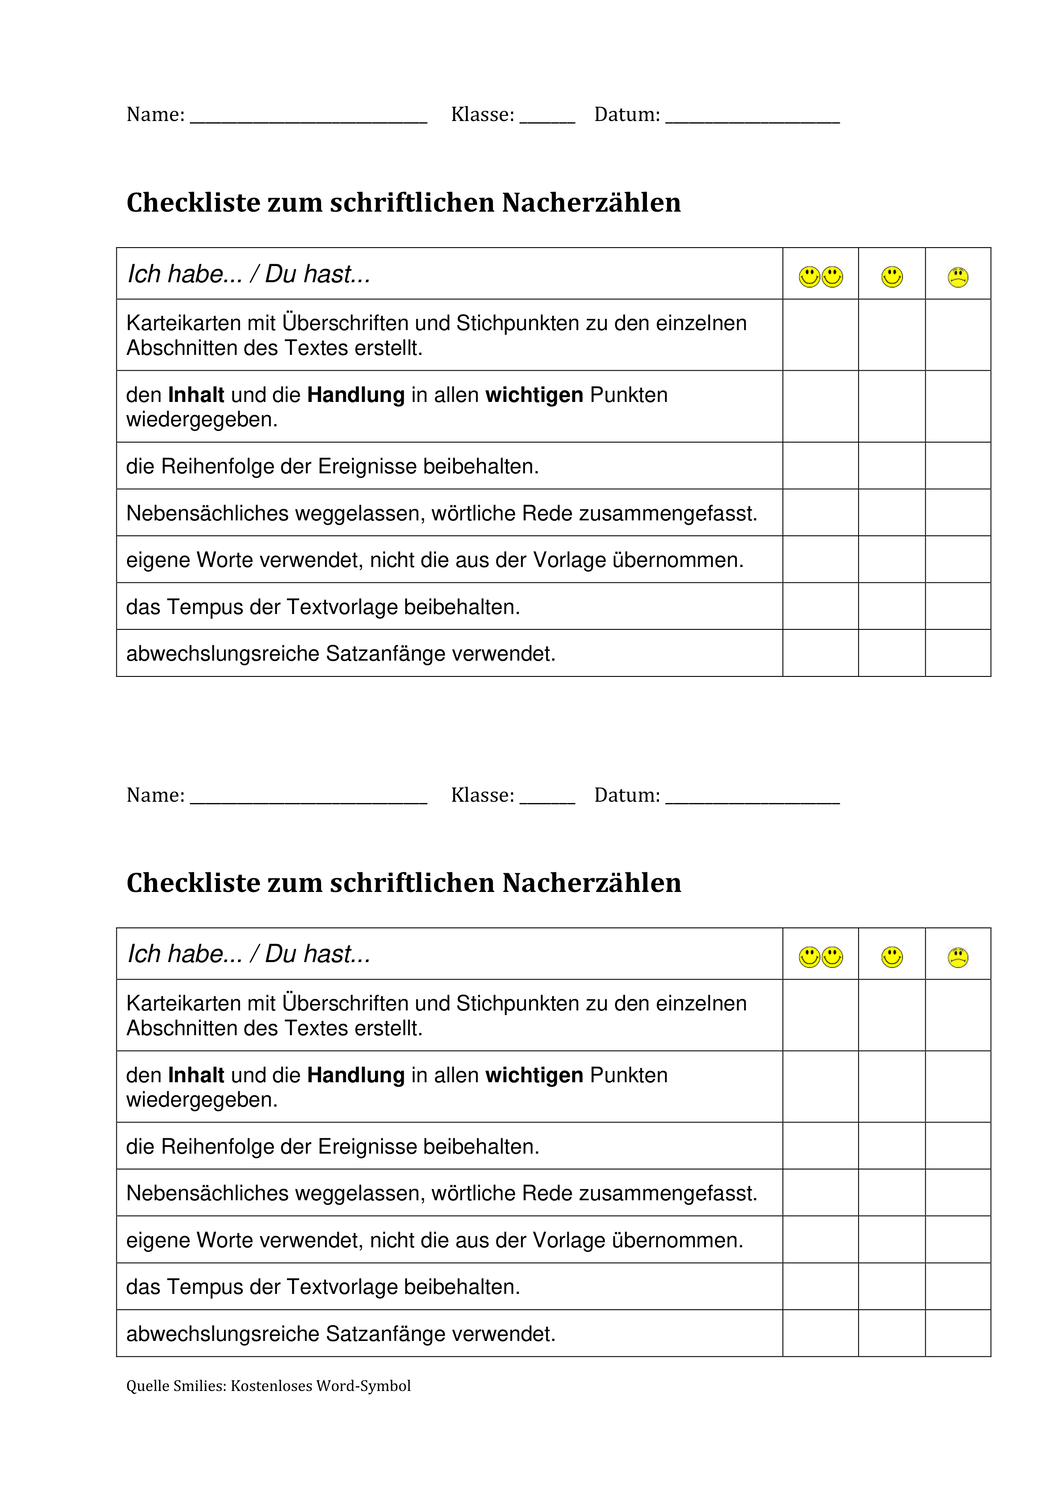 Checkliste Nacherzahlen Unterrichtsmaterial In Den Fachern Deutsch Fachubergreifendes Checkliste Schreibkonferenz Unterrichtsmaterial